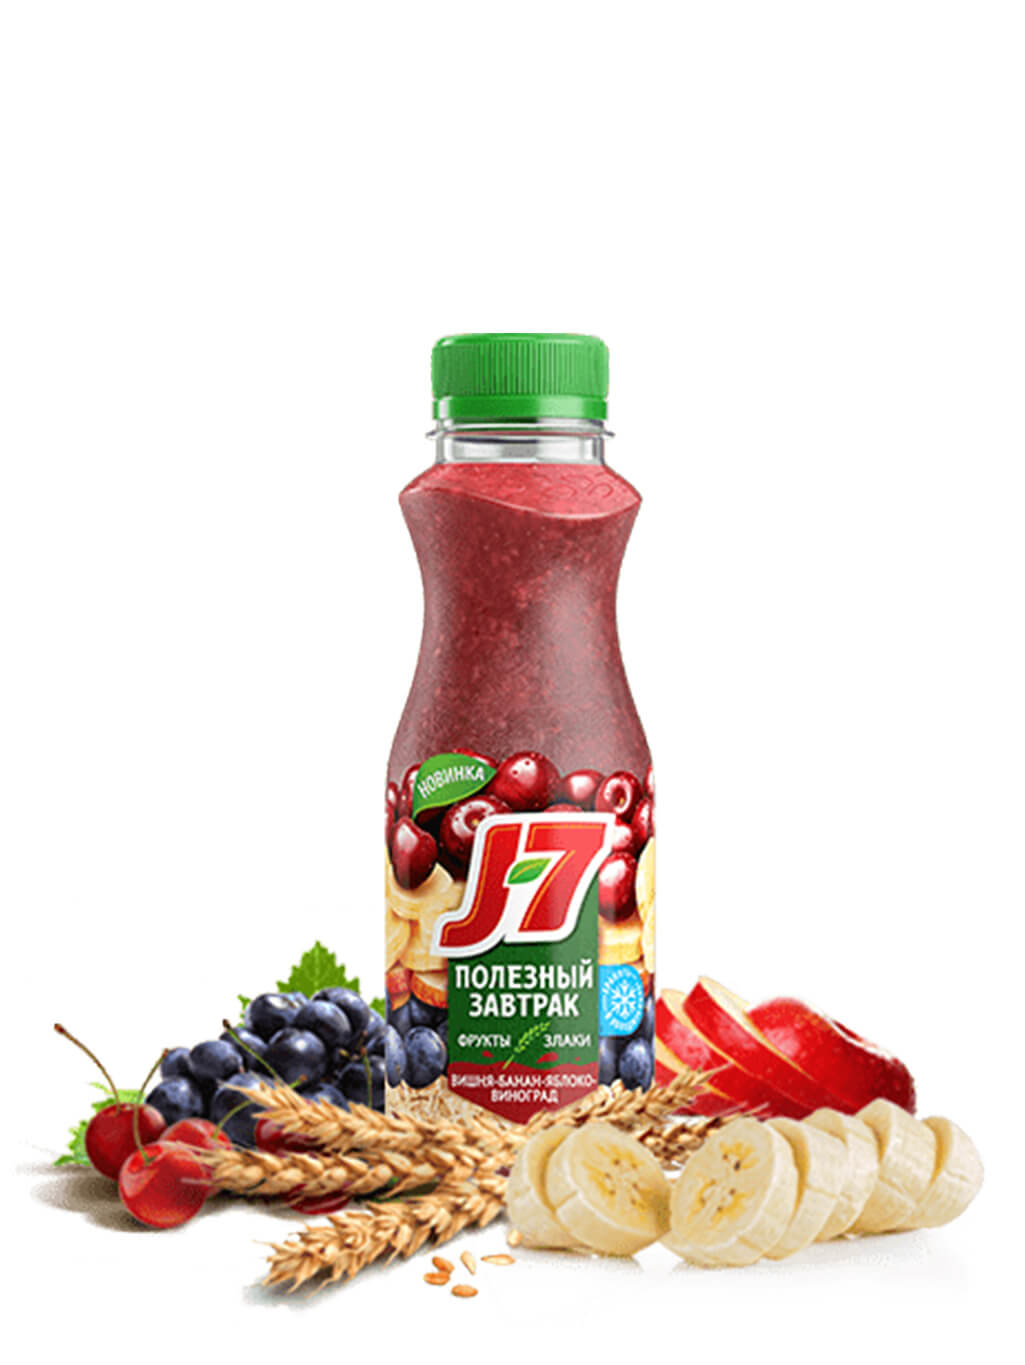 J product. Джей Севен полезный завтрак. Смузи Джей 7. J7 сок со злаками. Продукт j7 коктейль 300мл.